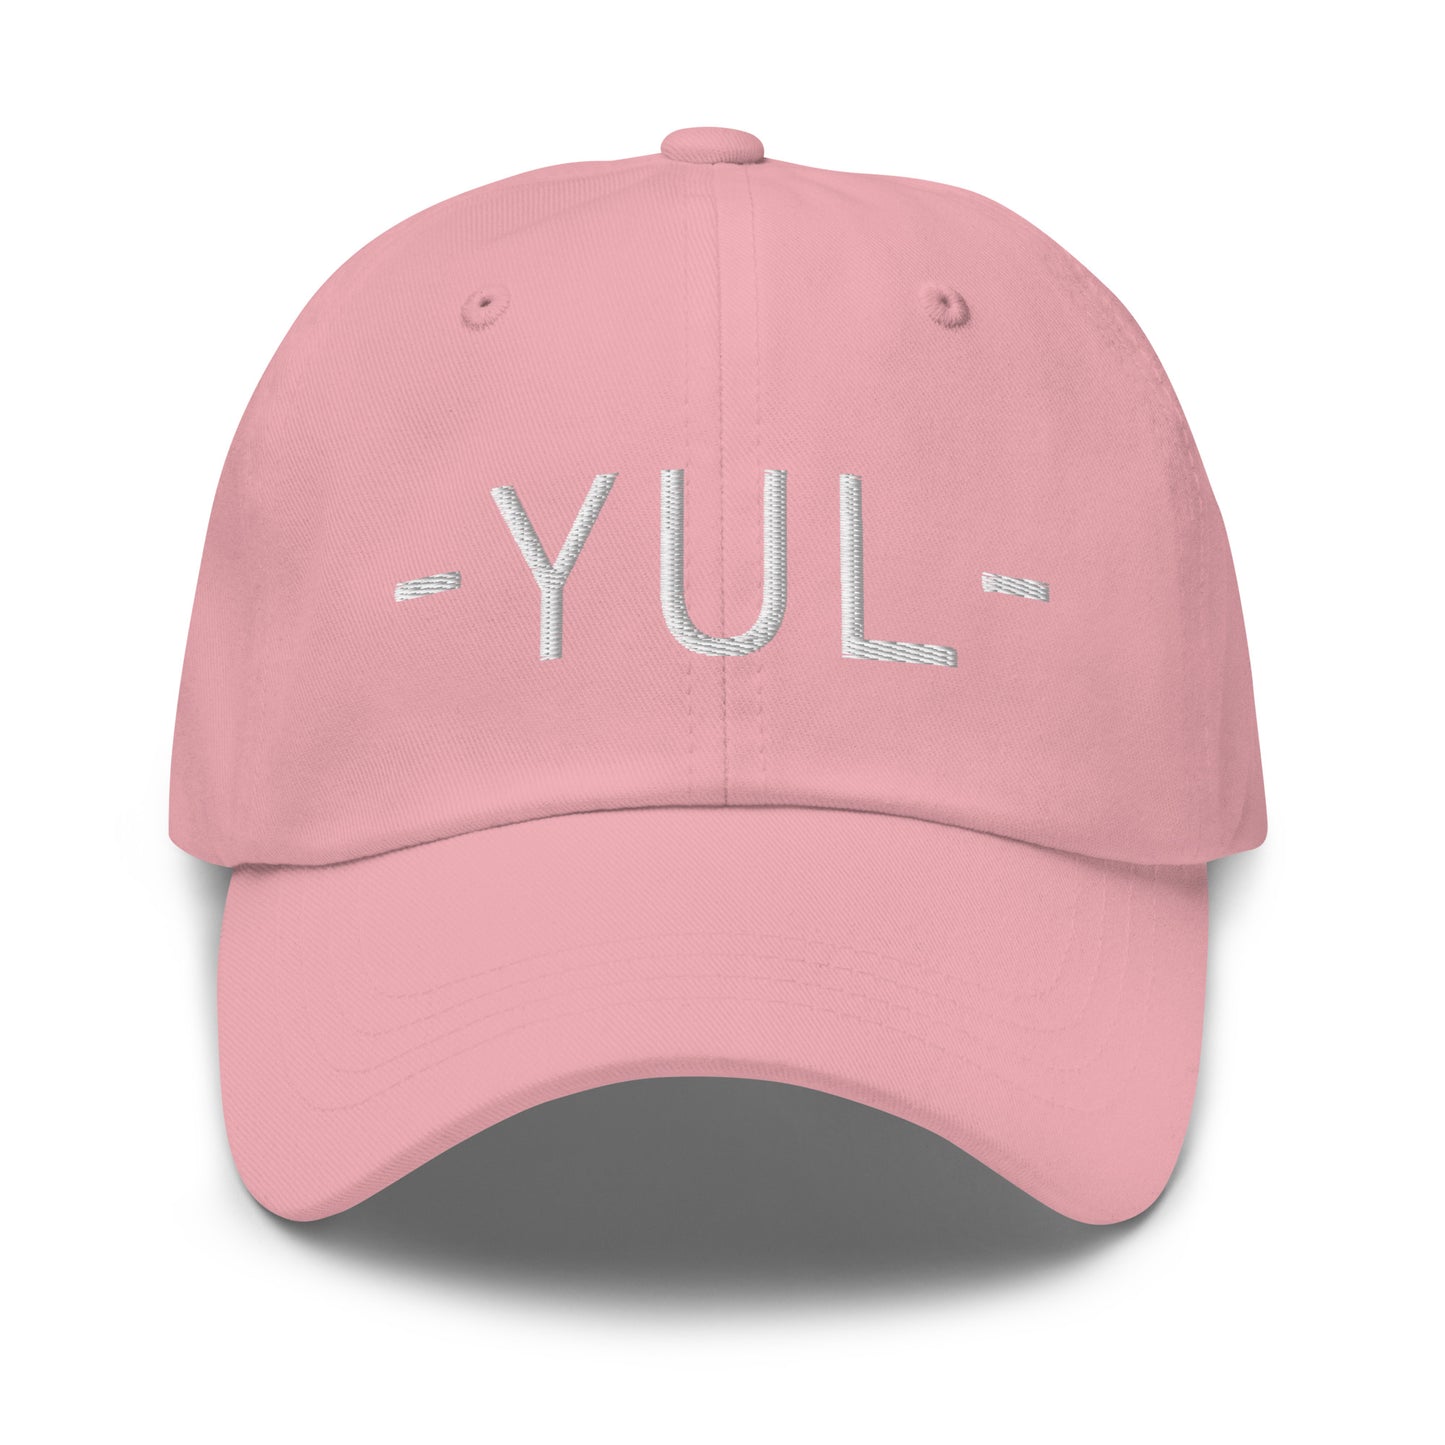 Souvenir Baseball Cap - White • YUL Montreal • YHM Designs - Image 25